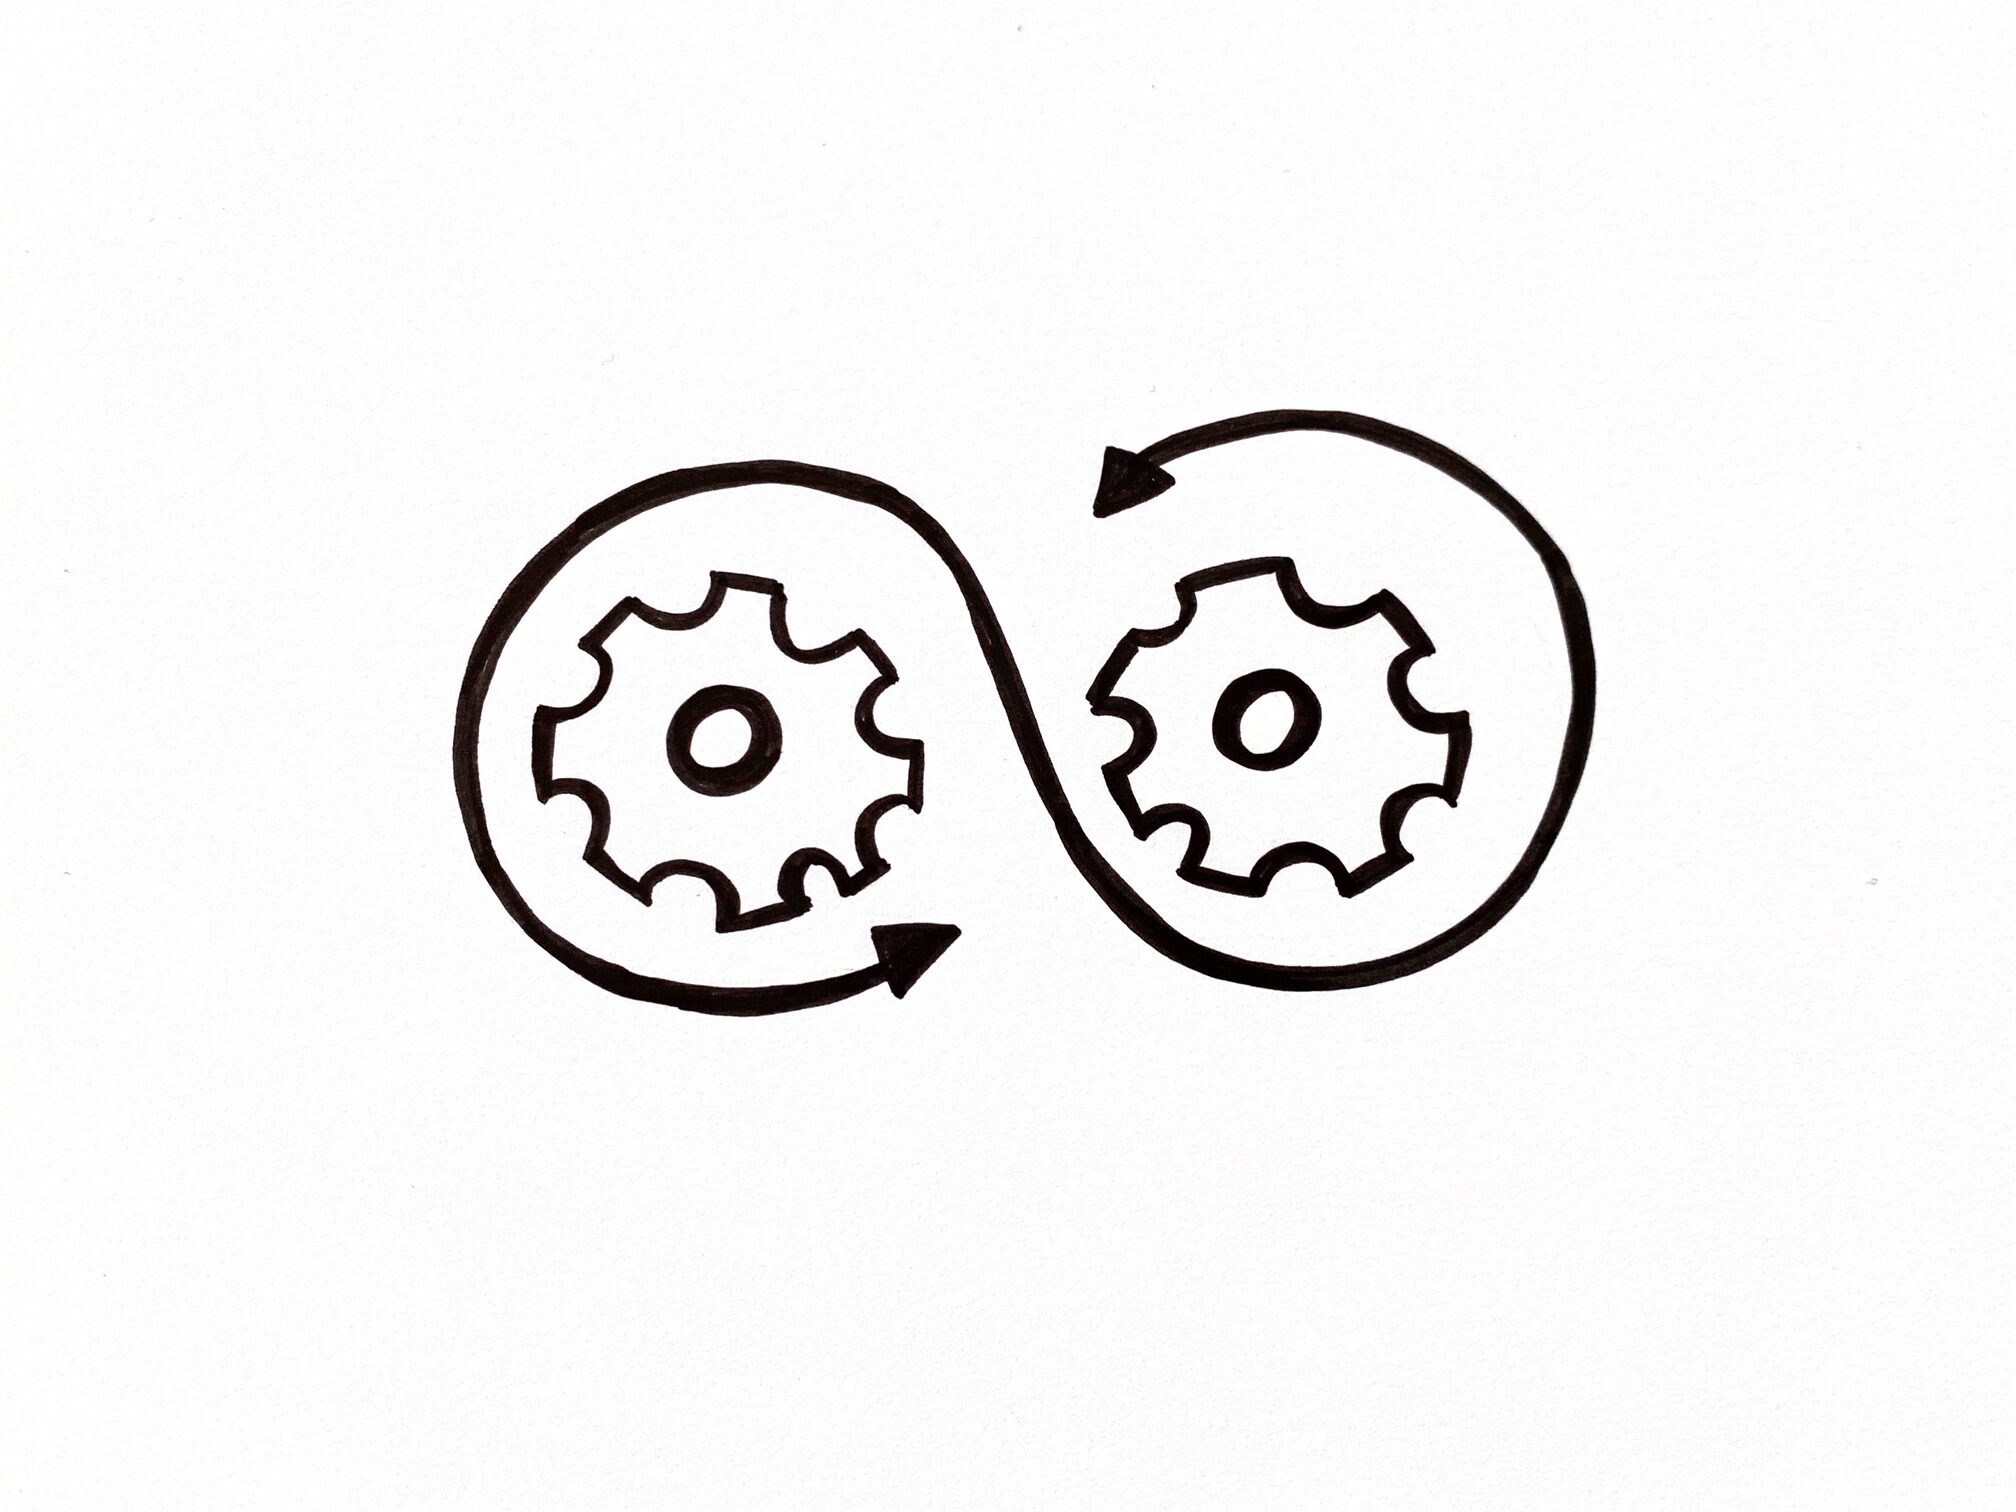 Zwei skizzierte Zanräder, die von einem Pfeil in einer angedeuteten unendlich Schlaufe umrandet werden. Als Symbol für die Organisationsentwicklung heute.